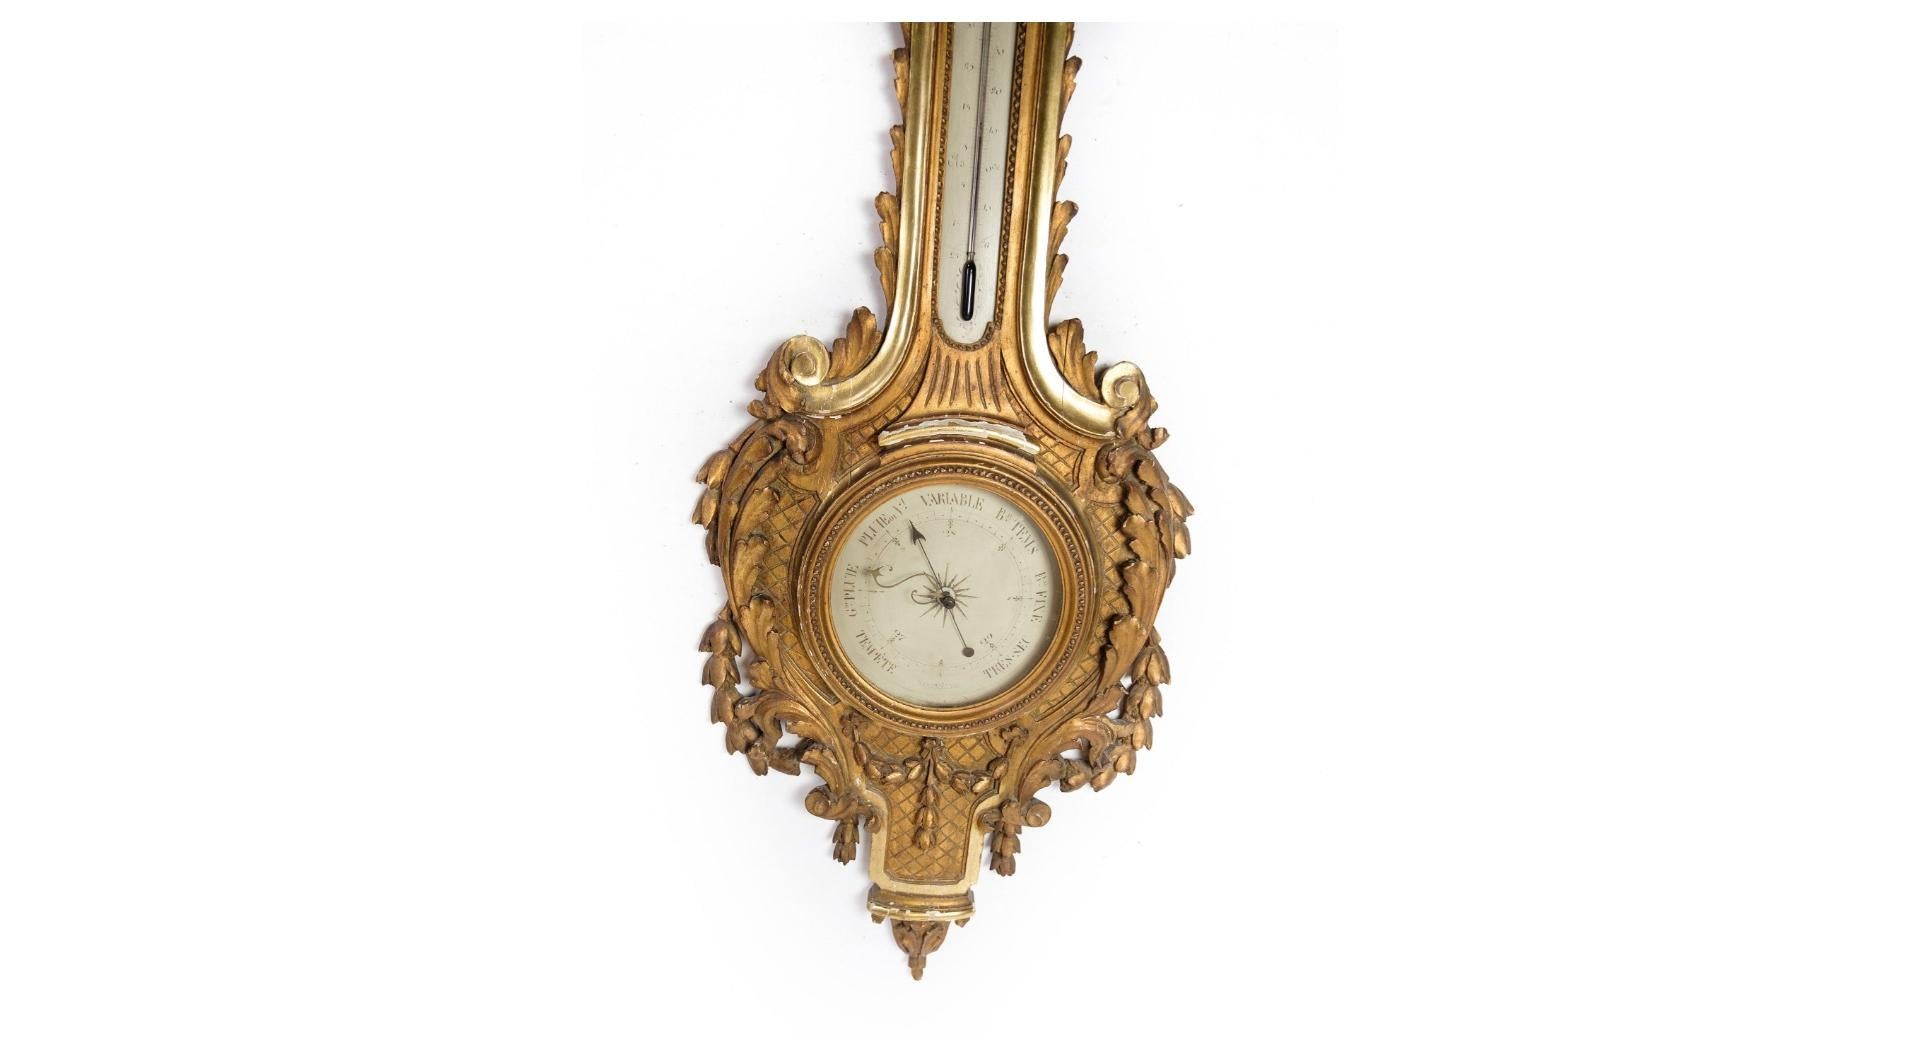 Ein französisches Louis-XVI-Barometer mit kunstvollen Schnitzereien und Originalvergoldung aus dem späten 1700. Dieses exquisite Stück ist ein Zeugnis für die Opulenz und die Handwerkskunst der damaligen Zeit und zeugt von unvergleichlicher